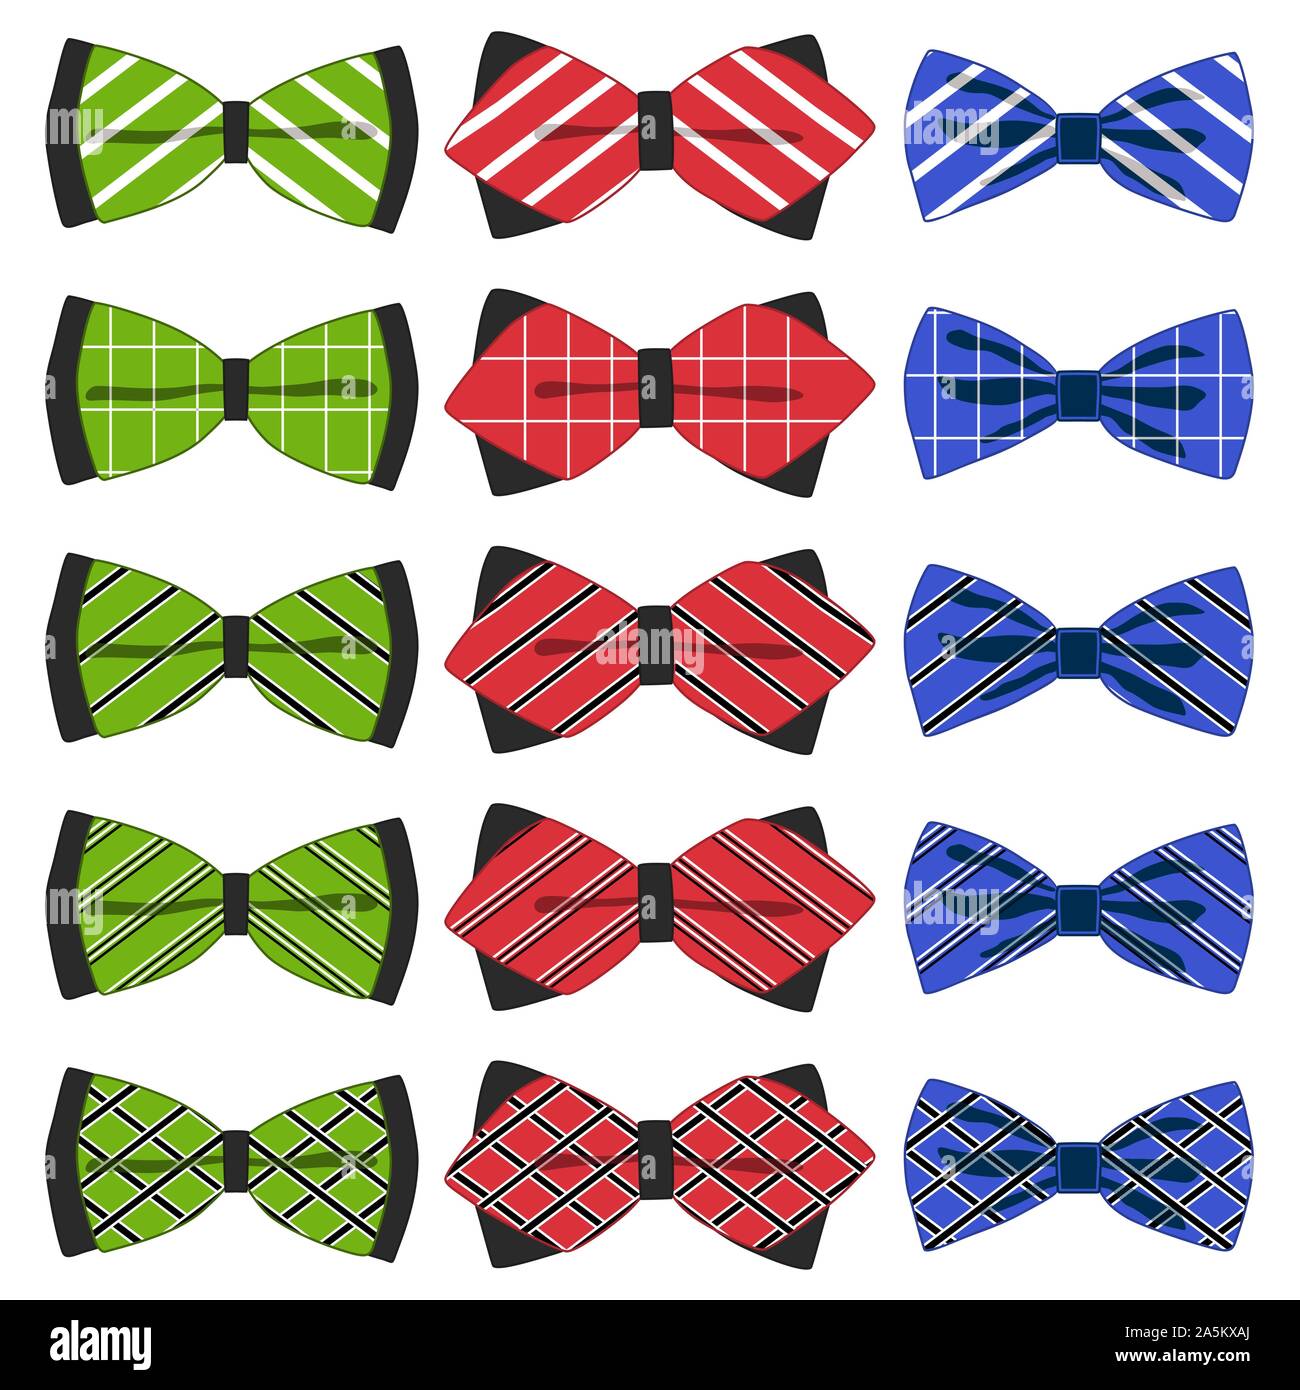 Illustrazione sul tema grande set colorato nastro diversi tipi, il filtro bow tie varie dimensioni. Modello di nastro consistente di raccolta indumenti di materie tessili bow tie f Illustrazione Vettoriale